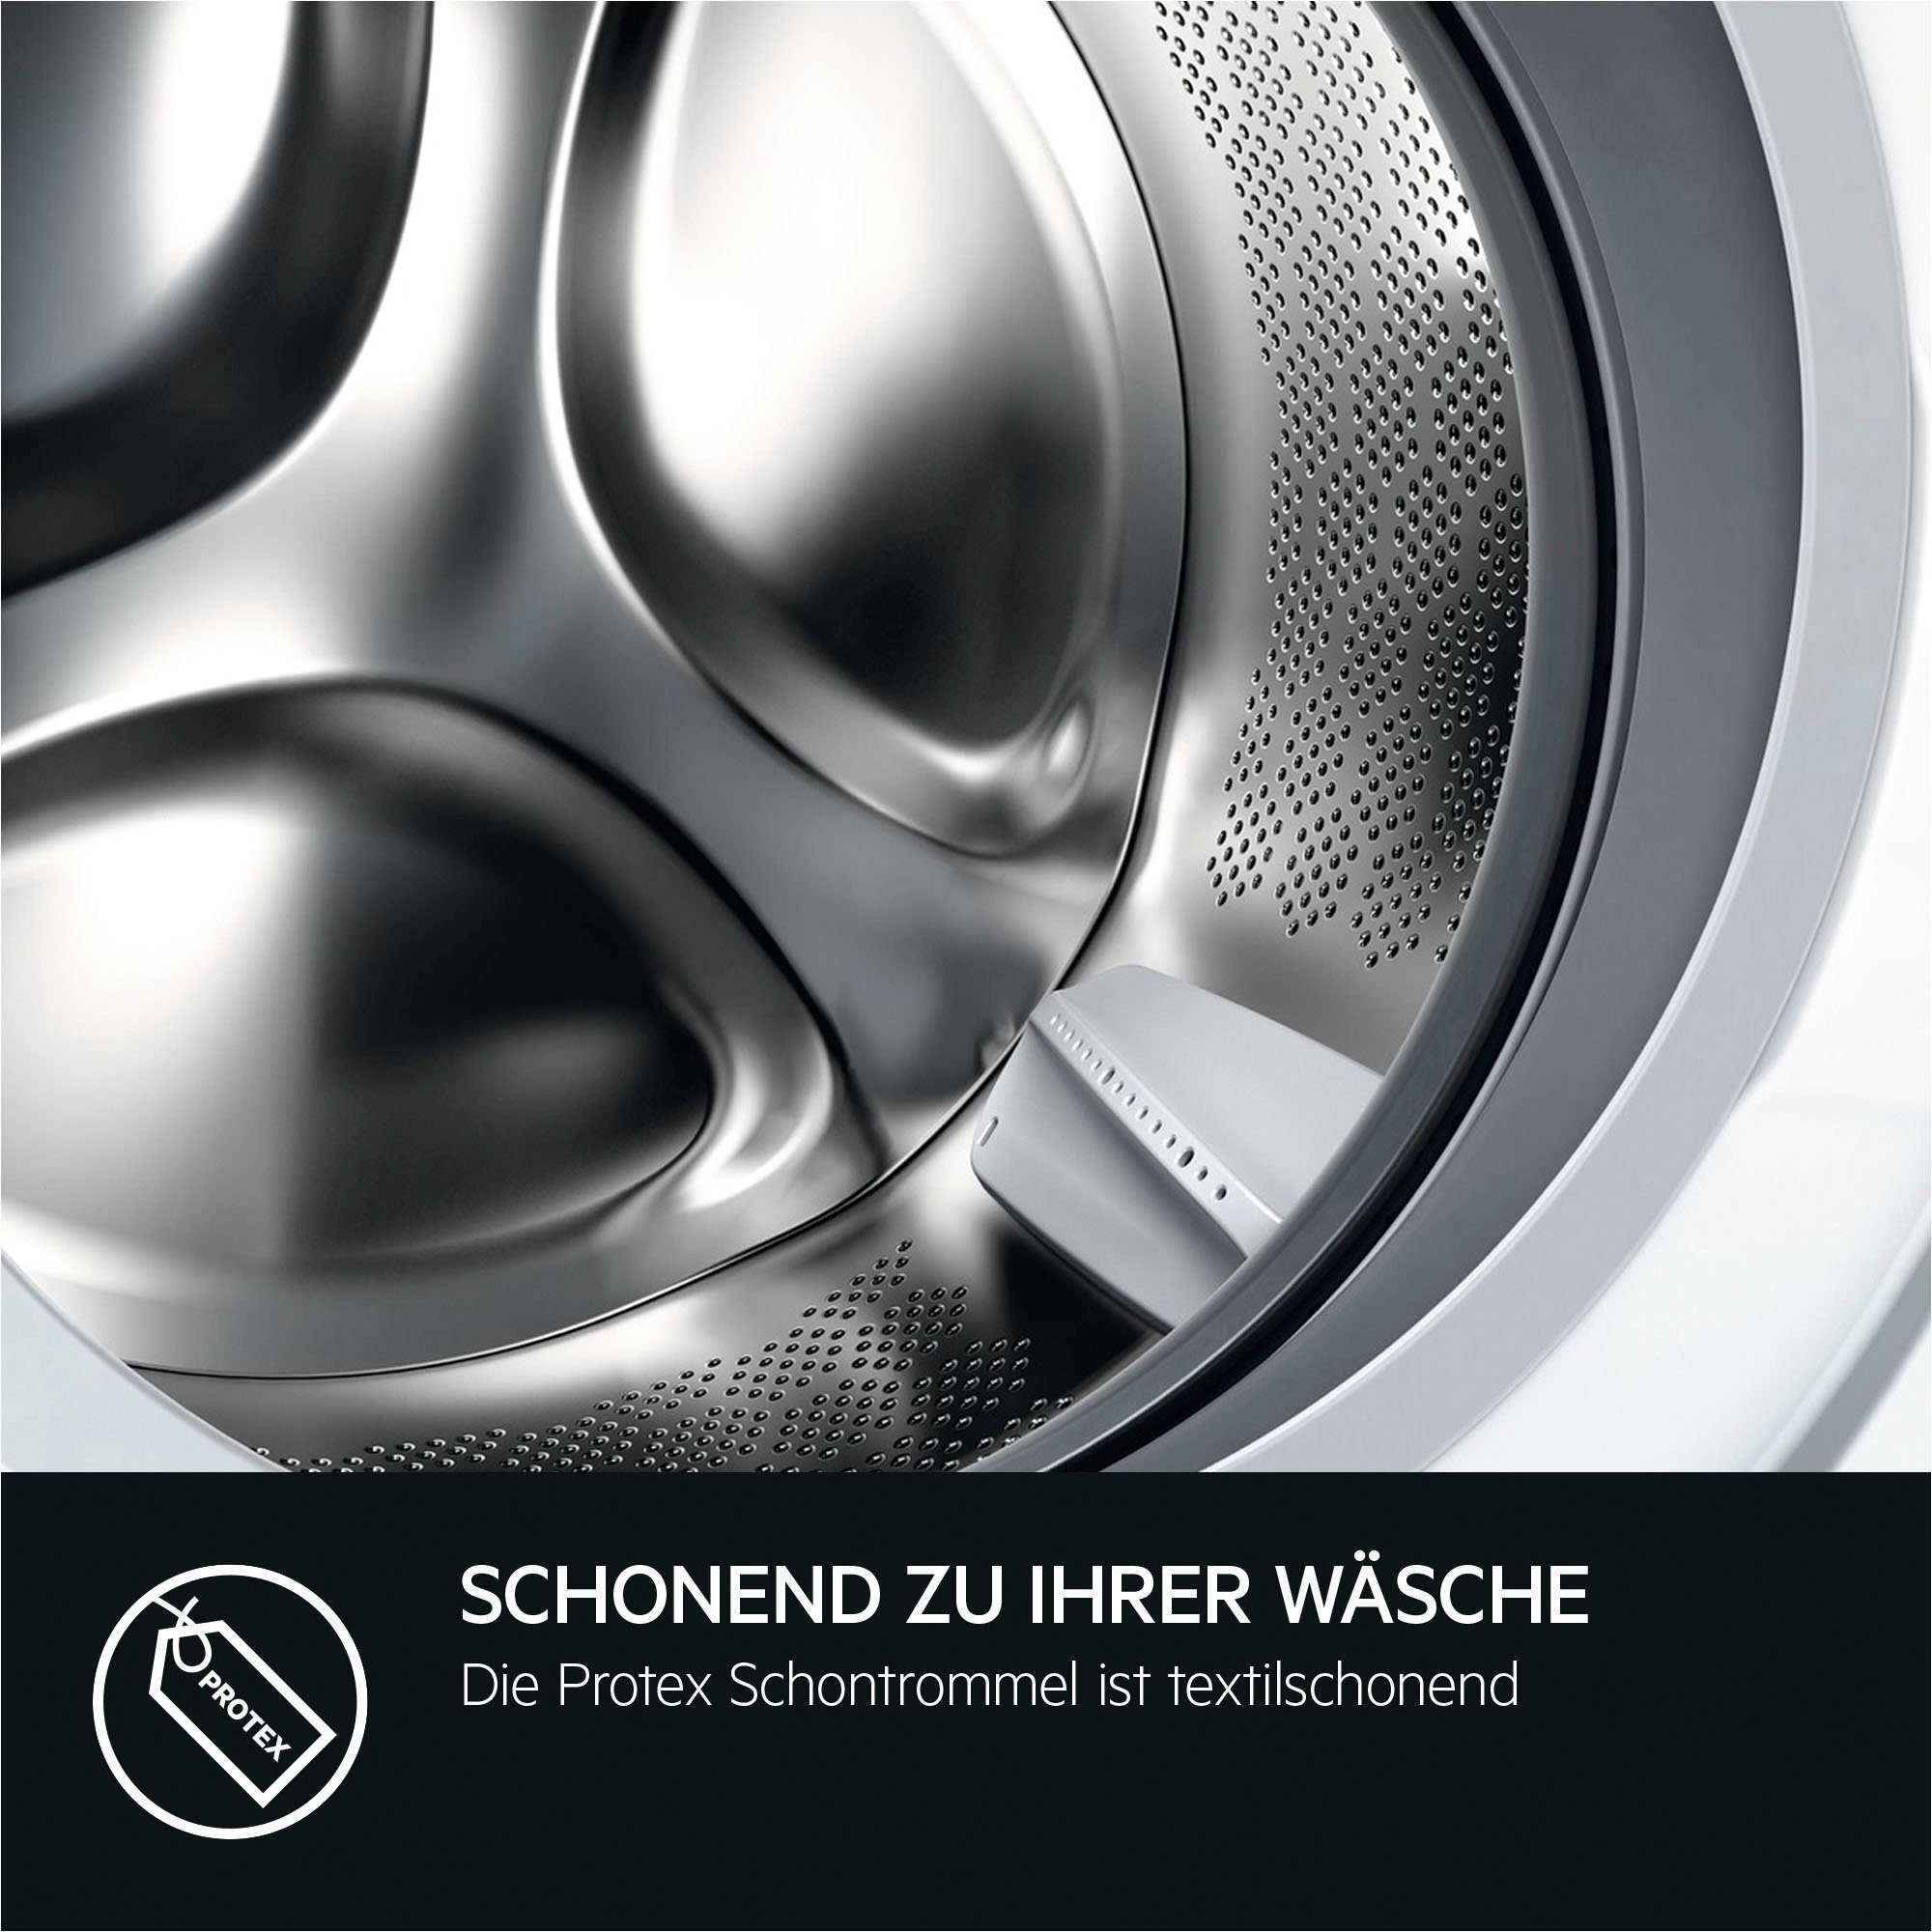 AEG Waschmaschine LR6D60490 - Energie und Zeit, spart kg, Wasser 1400 ProSense® U/min, 40% bis 914915144, 9 Mengenautomatik​